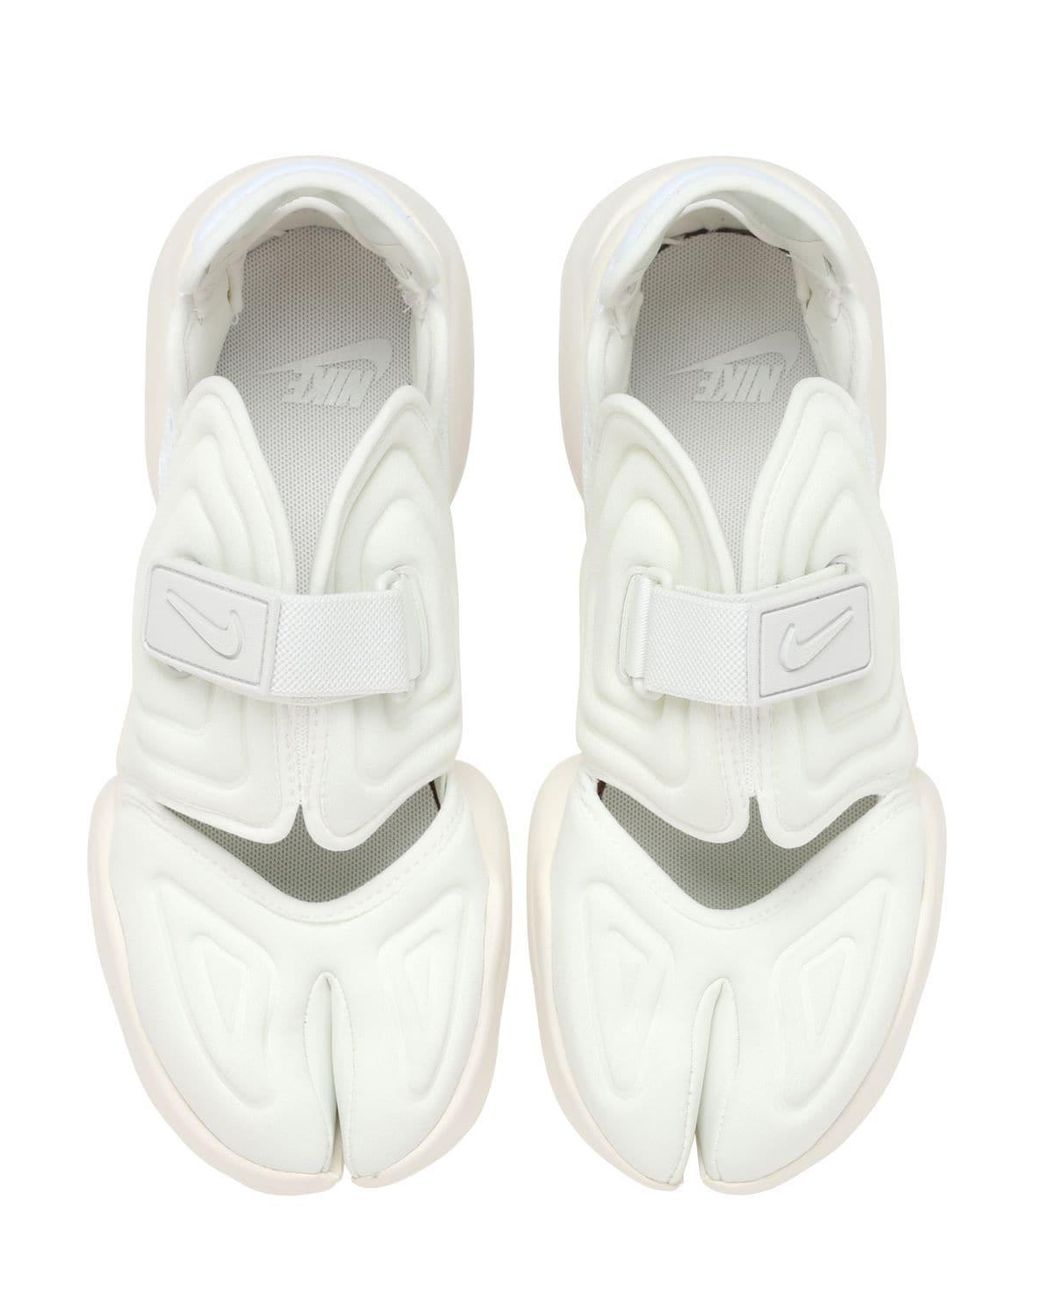 Nike Aqua Rift Neoprene And Mesh Sneakers in White | Lyst Canada